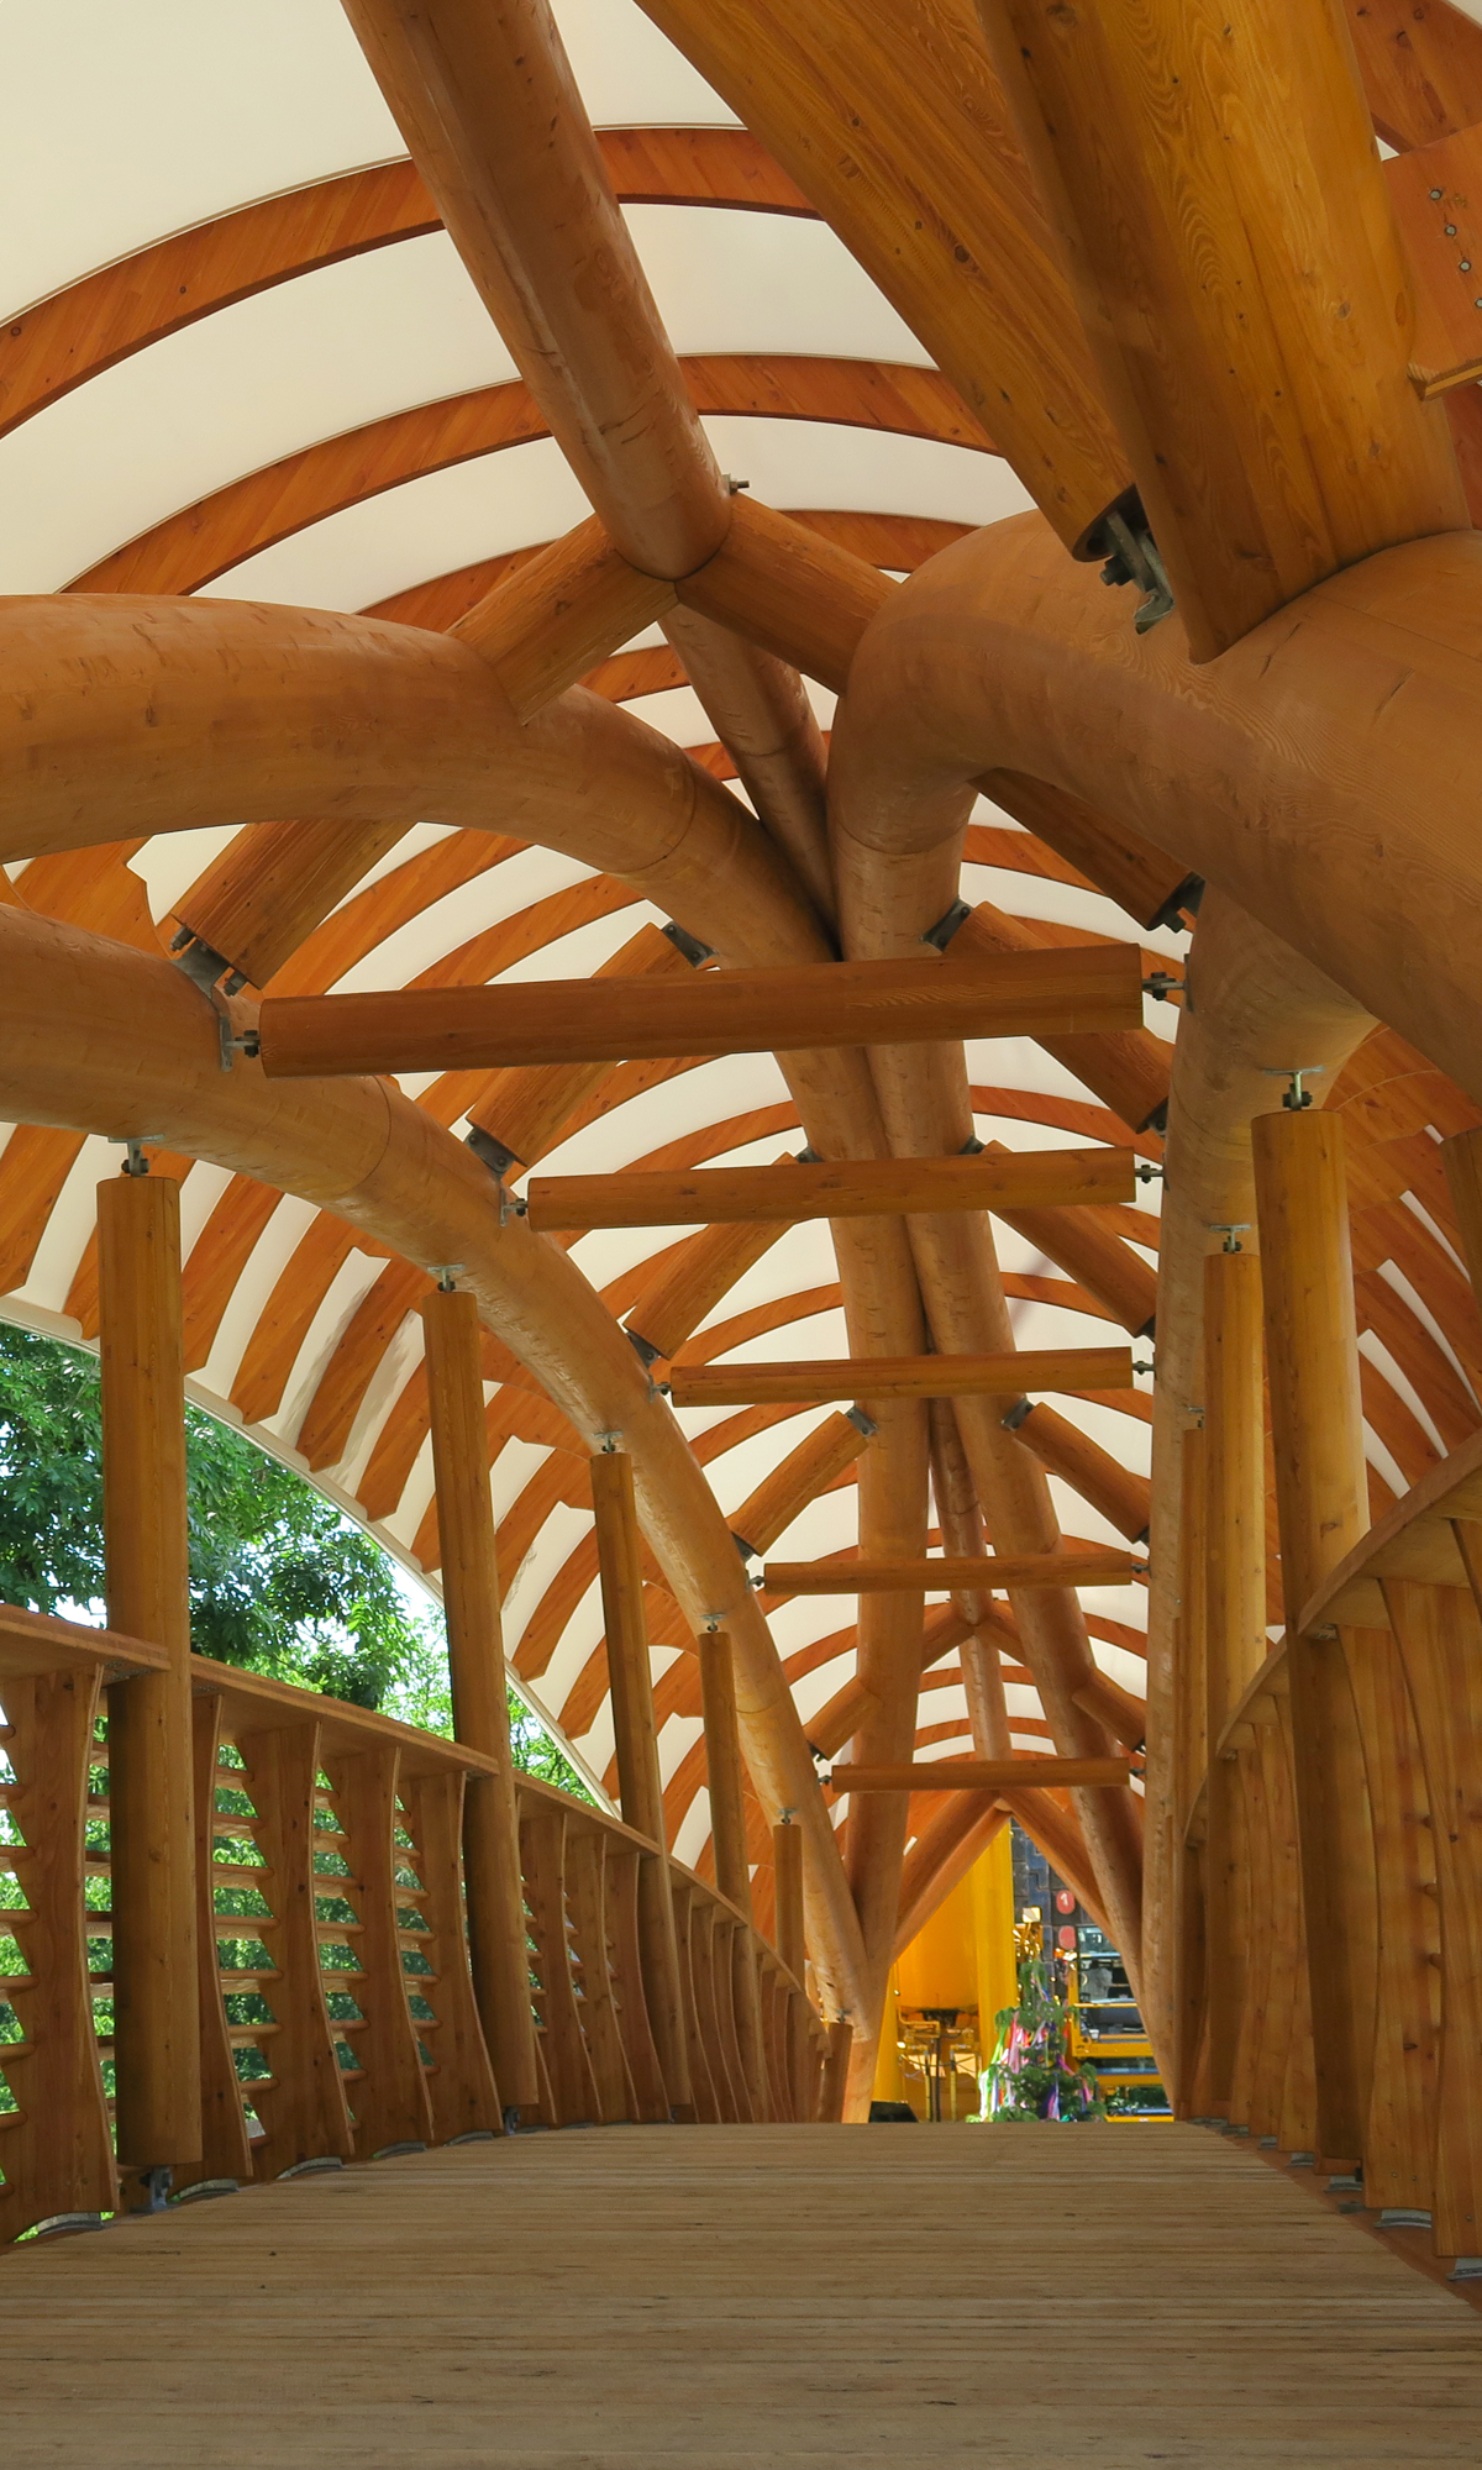 L’intérieur du pont artistique en bois «Aubrugg» est visible. On distingue des structures courbes en bois massif et un garde-corps haut en bois.